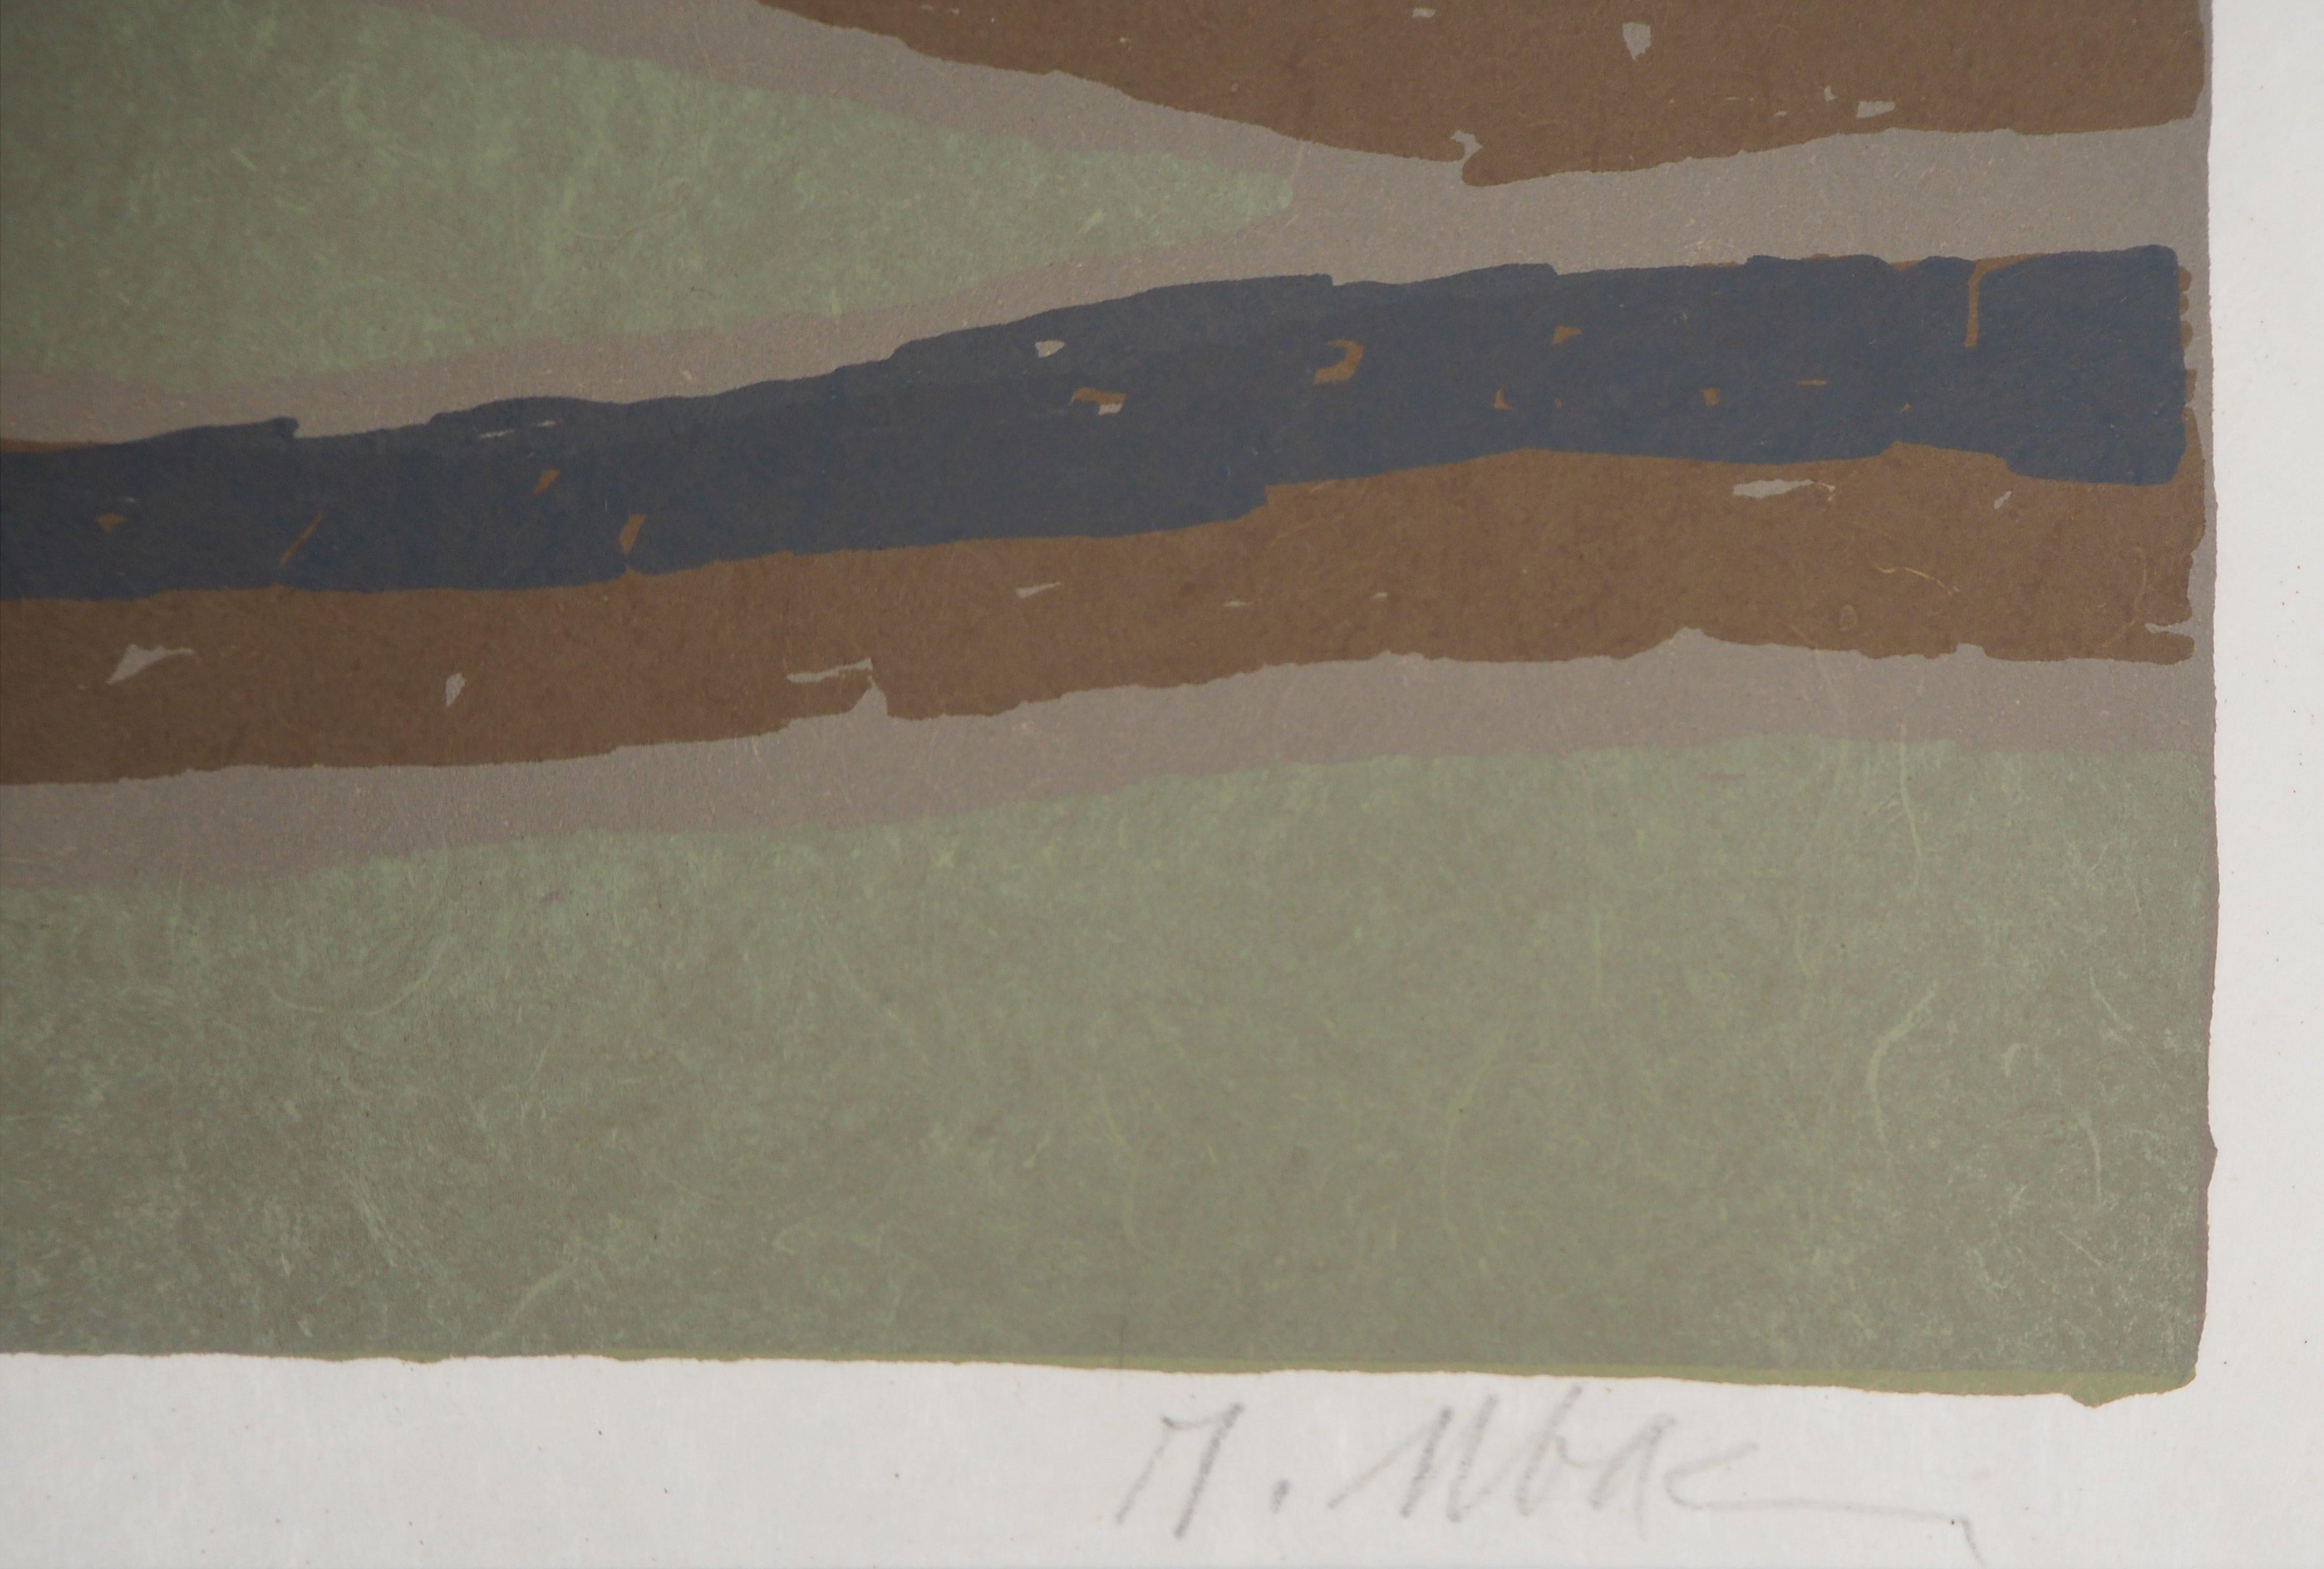 Raoul UBAC
Rides de sable surréalistes

Lithographie originale
Signé à la main au crayon
Sur papier japonais, 40,5 x 31,5 cm (c. 15,9 x 12,4 inch)

Excellent état